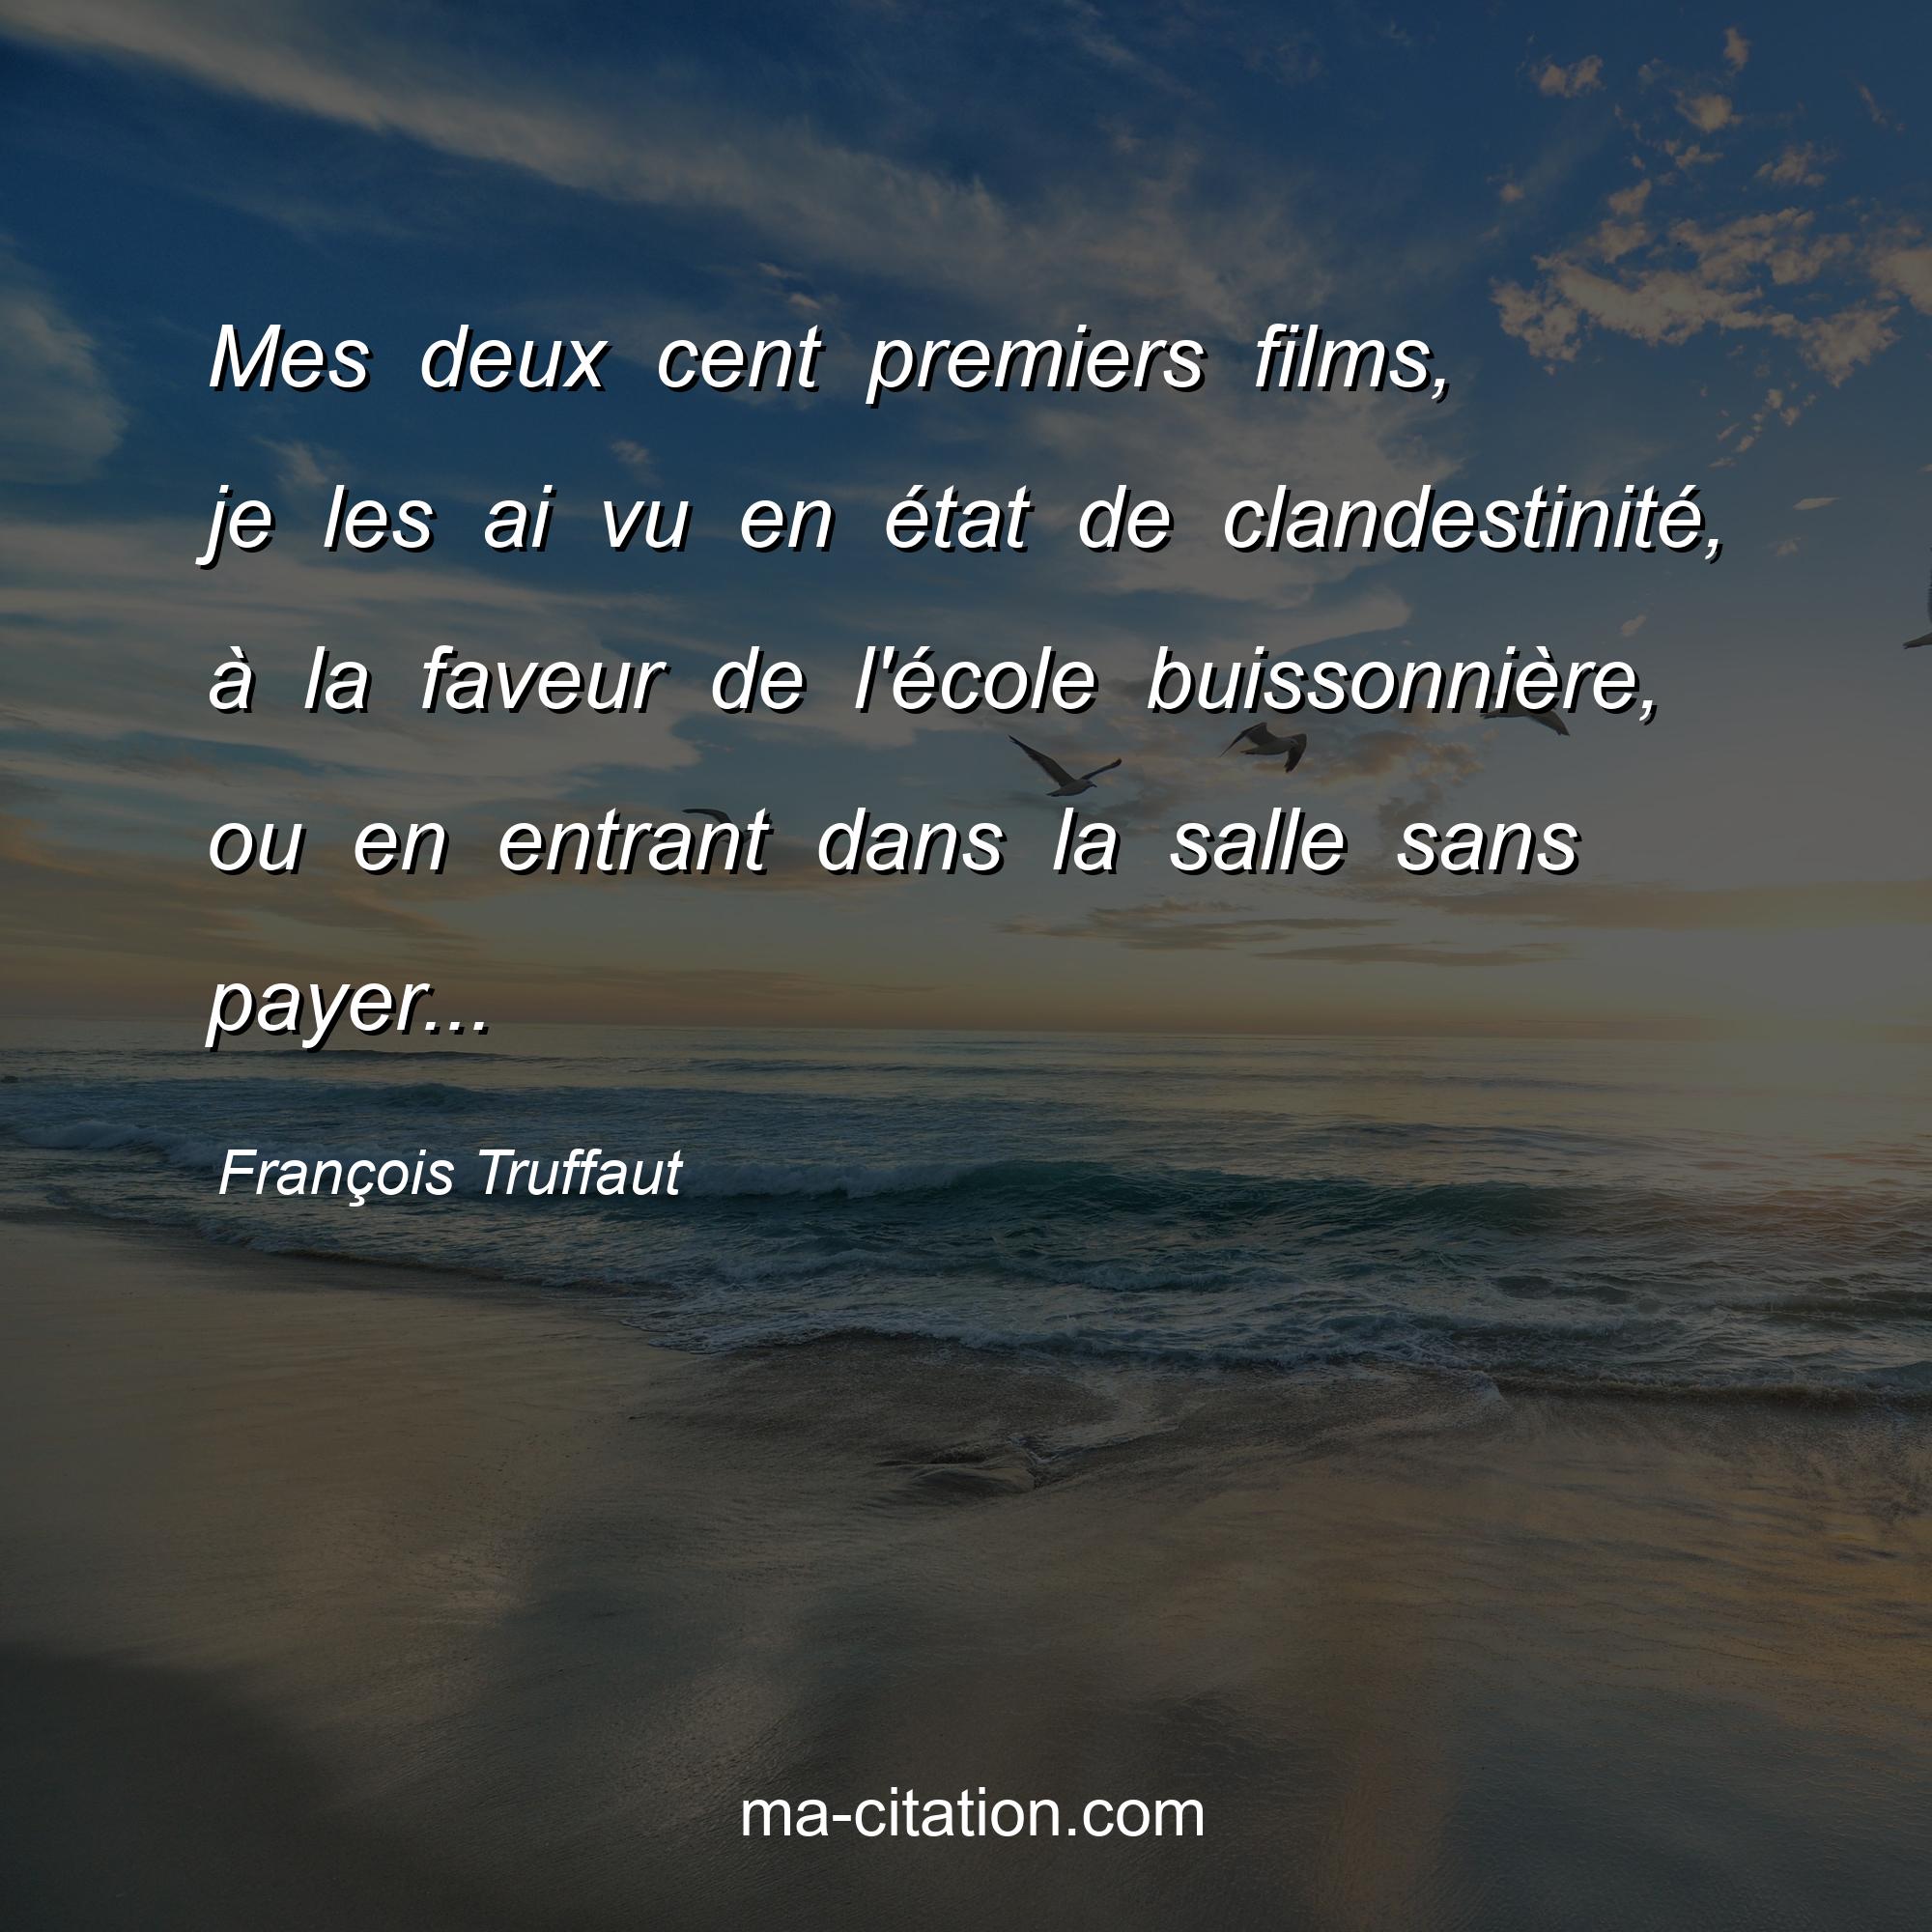 François Truffaut : Mes deux cent premiers films, je les ai vu en état de clandestinité, à la faveur de l'école buissonnière, ou en entrant dans la salle sans payer...